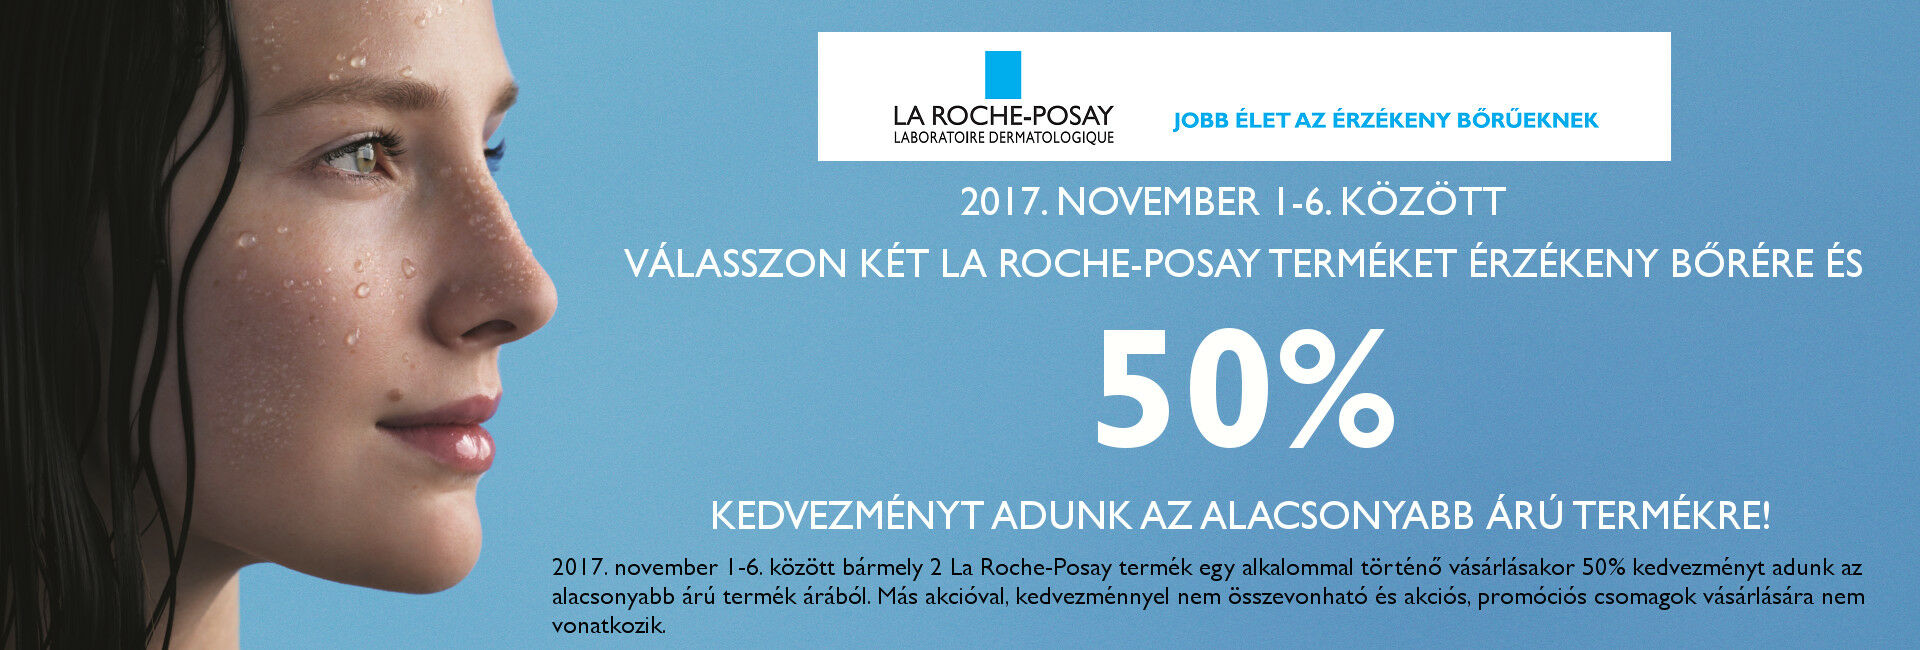 Válasszon egyszerre 2db La Roche-Posay terméket, és az alacsonyabb árút ma féláron adjuk!